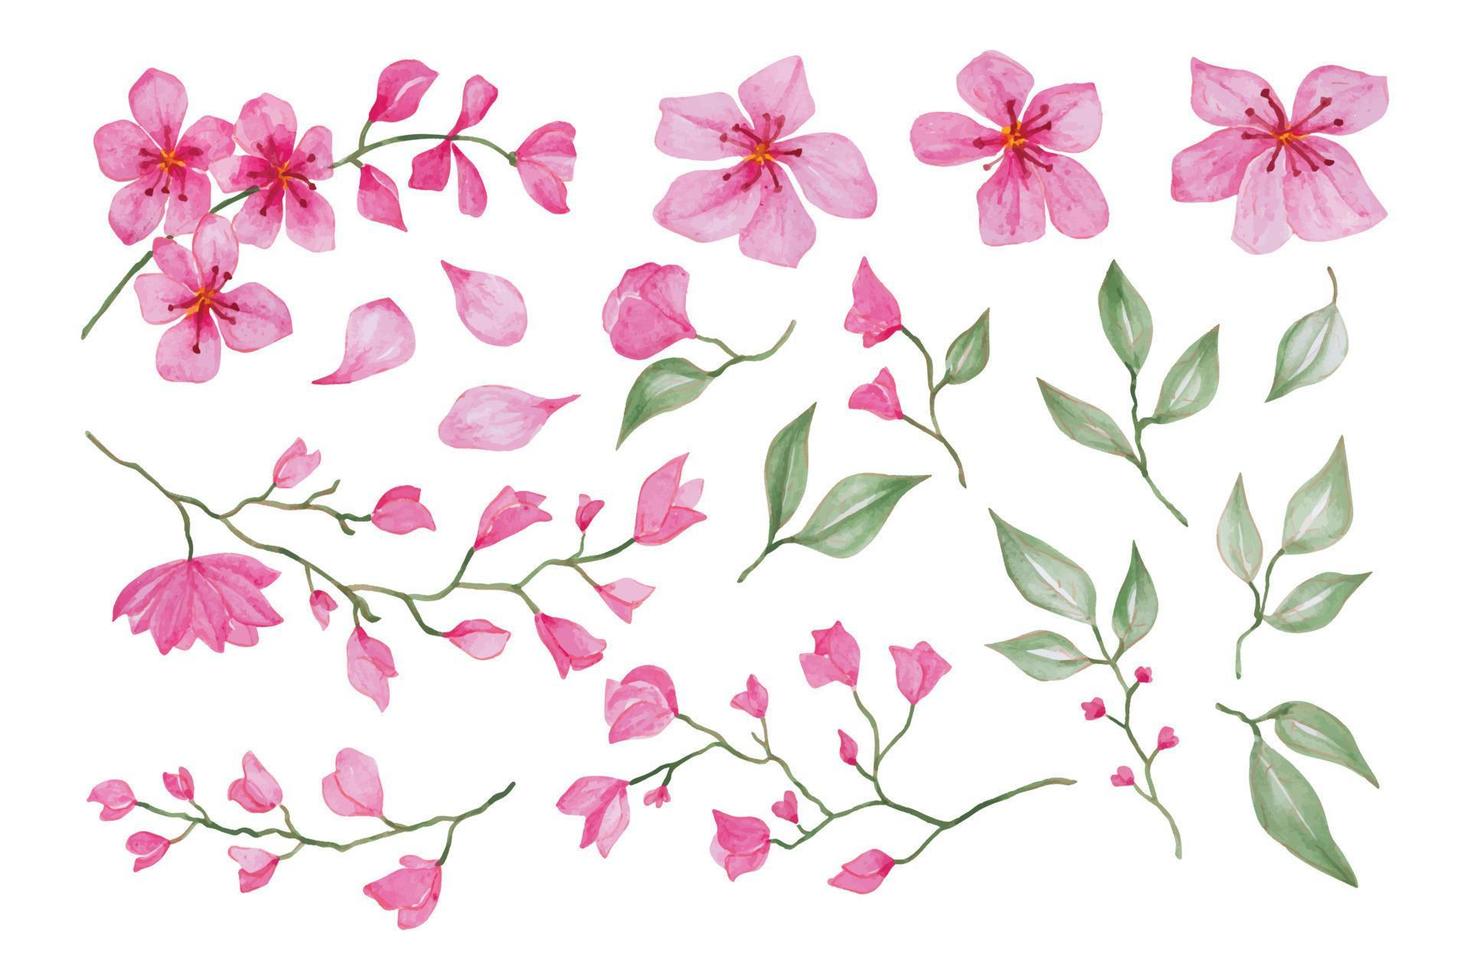 floreciente sakura sucursales, mano dibujado acuarela vector ilustración para saludo tarjeta o invitación diseño